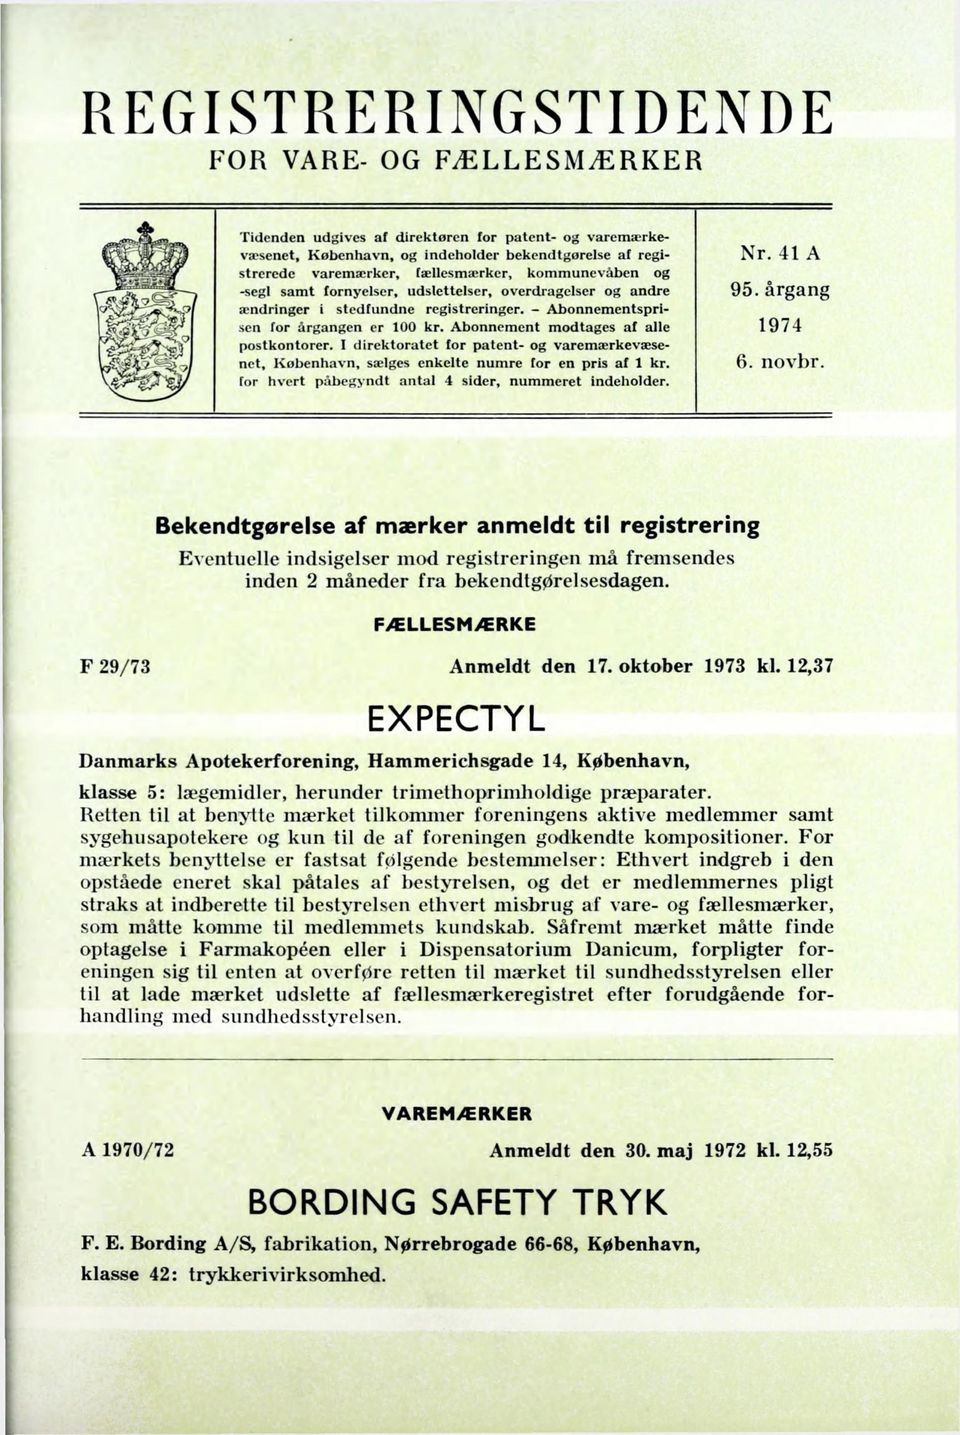 Abonnement modtages af alle 1974 postkontorer. I direktoratet for patent- og varemærkevæsenet, Kobenhavn, sælges enkelte numre for en pris af 1 kr. 6. novbr.